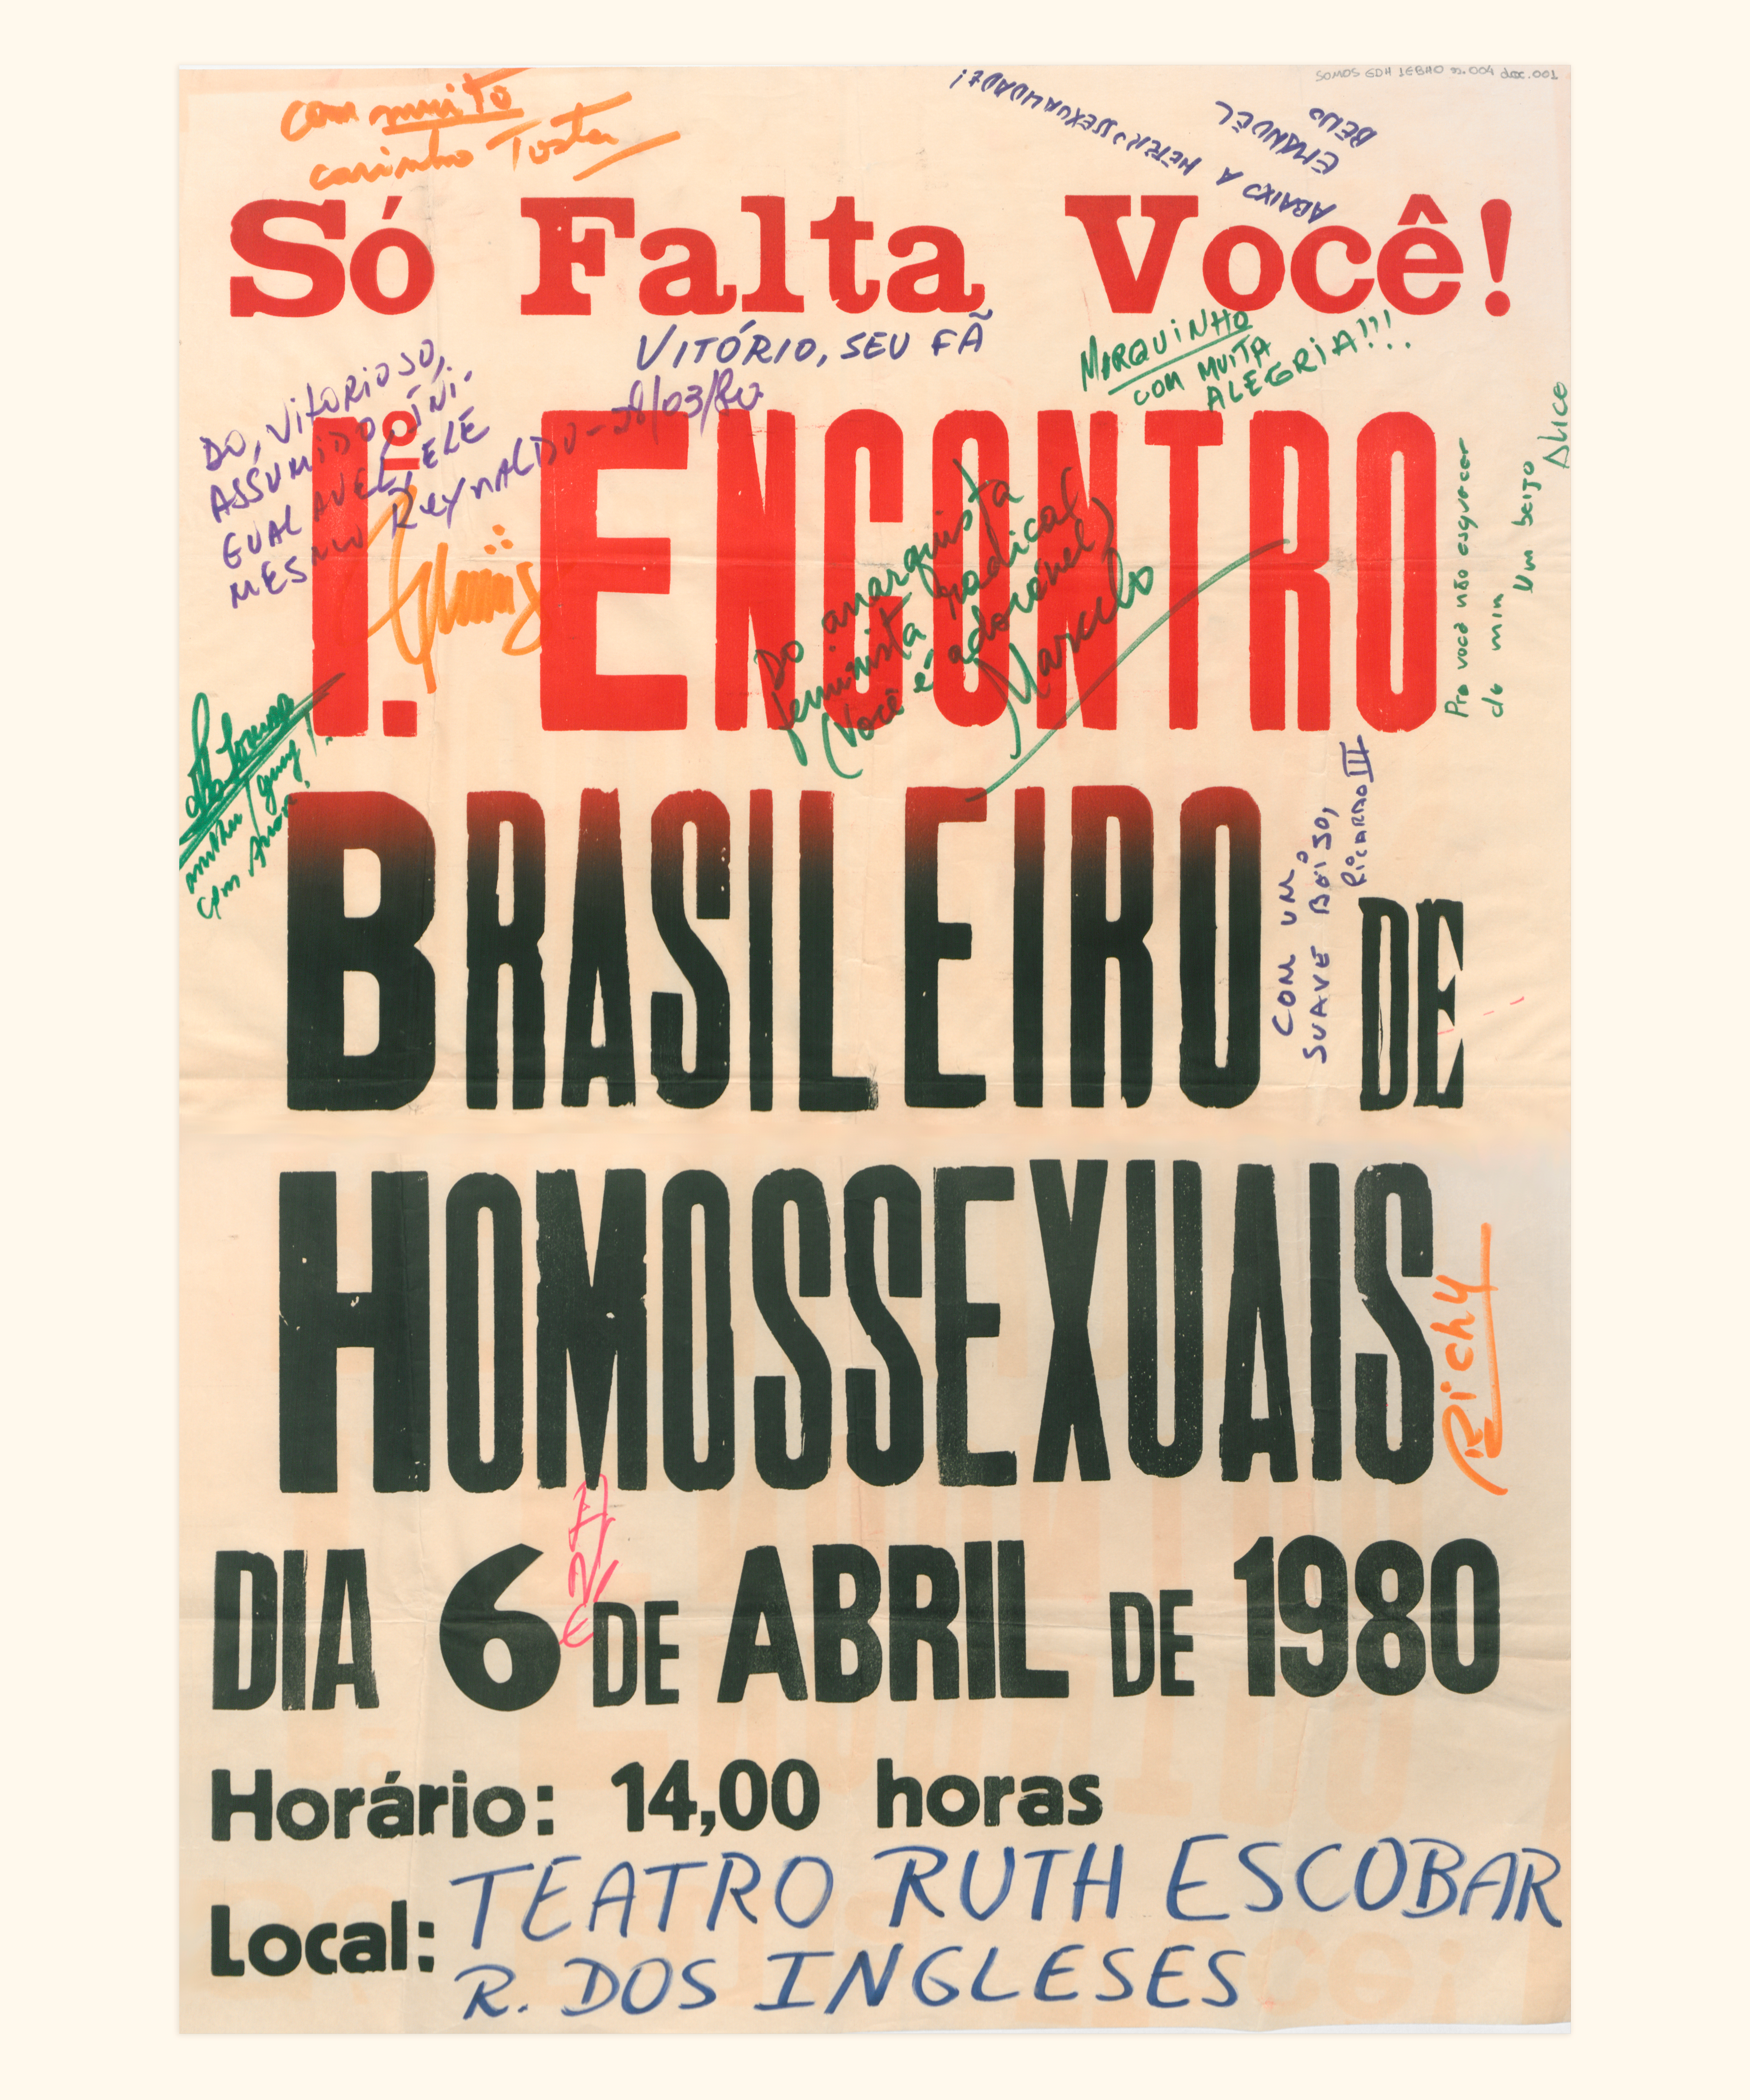 8. Cartaz assinado pelos participantes do Io Encontro Brasileiro de Homossexuais. SP, 1980.